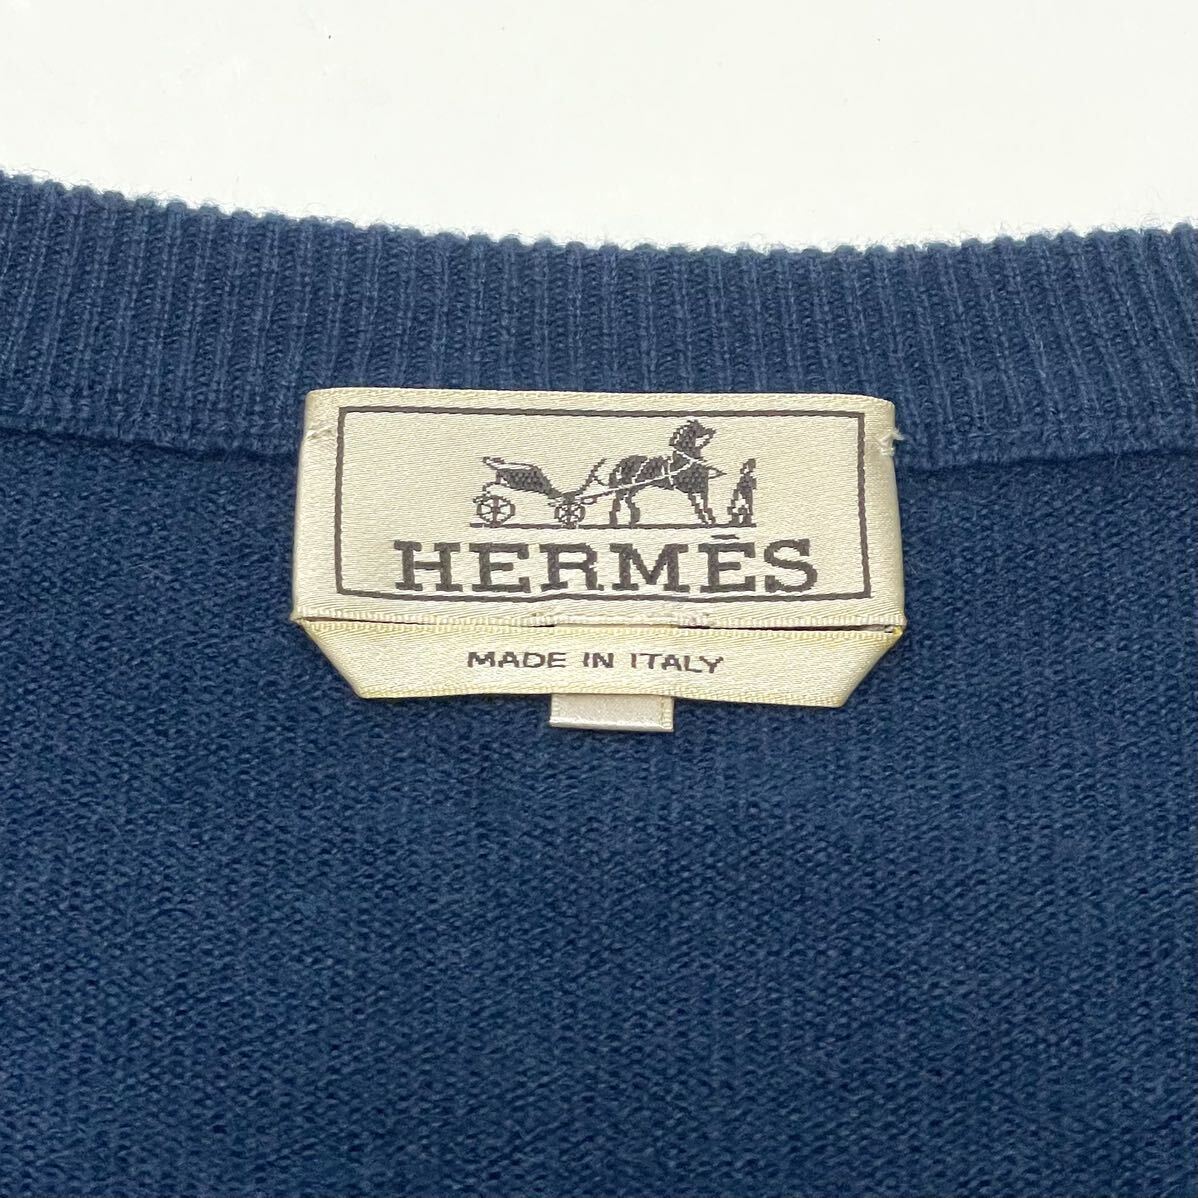 正規品 HERMES エルメス カシミヤ100% ニット Vネック セーター 長袖 トップス cashmere knit sweater ネイビー L イタリア製 メンズ_画像8